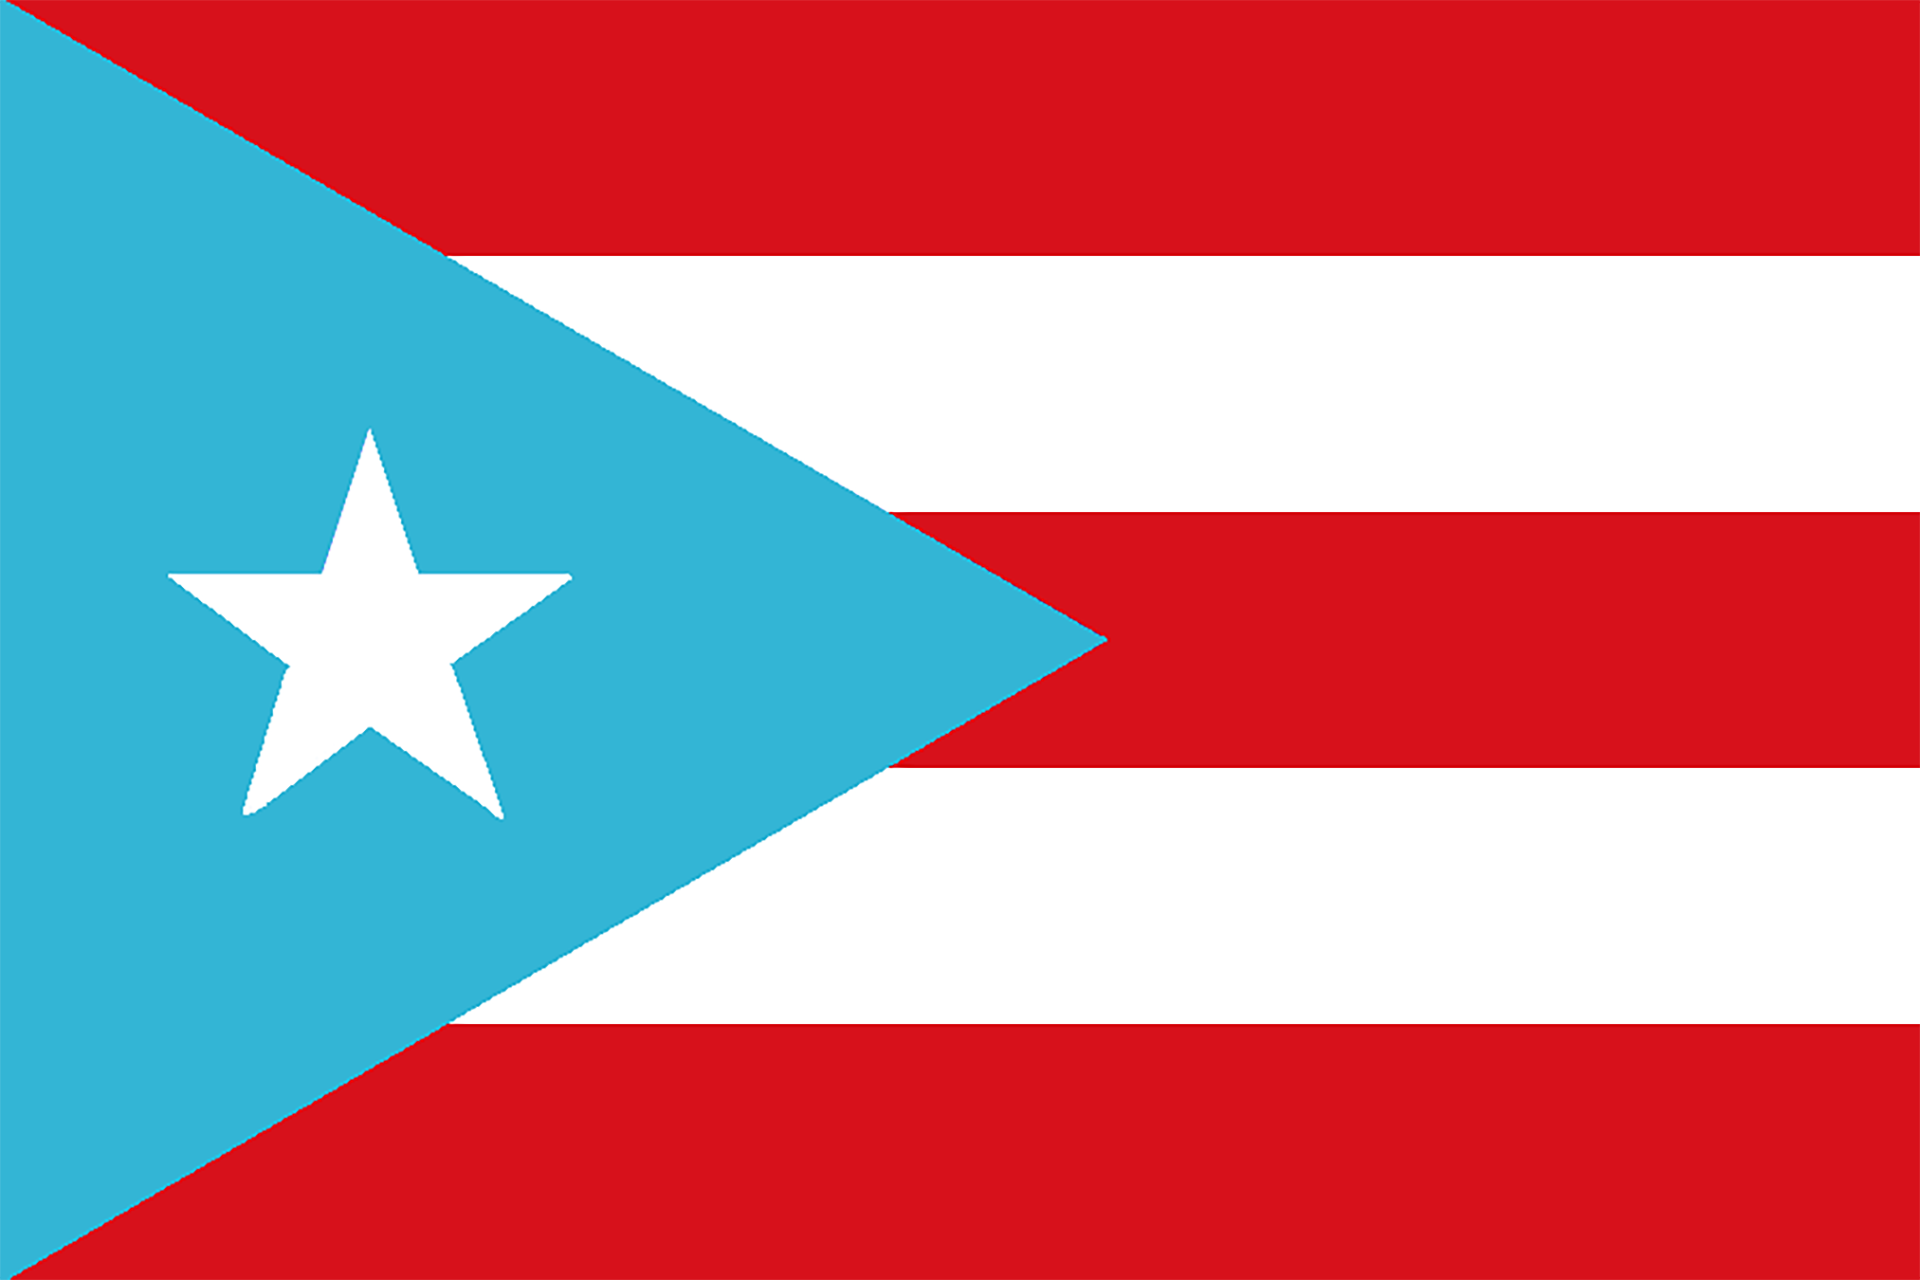 Bandera de cuba y puerto rico